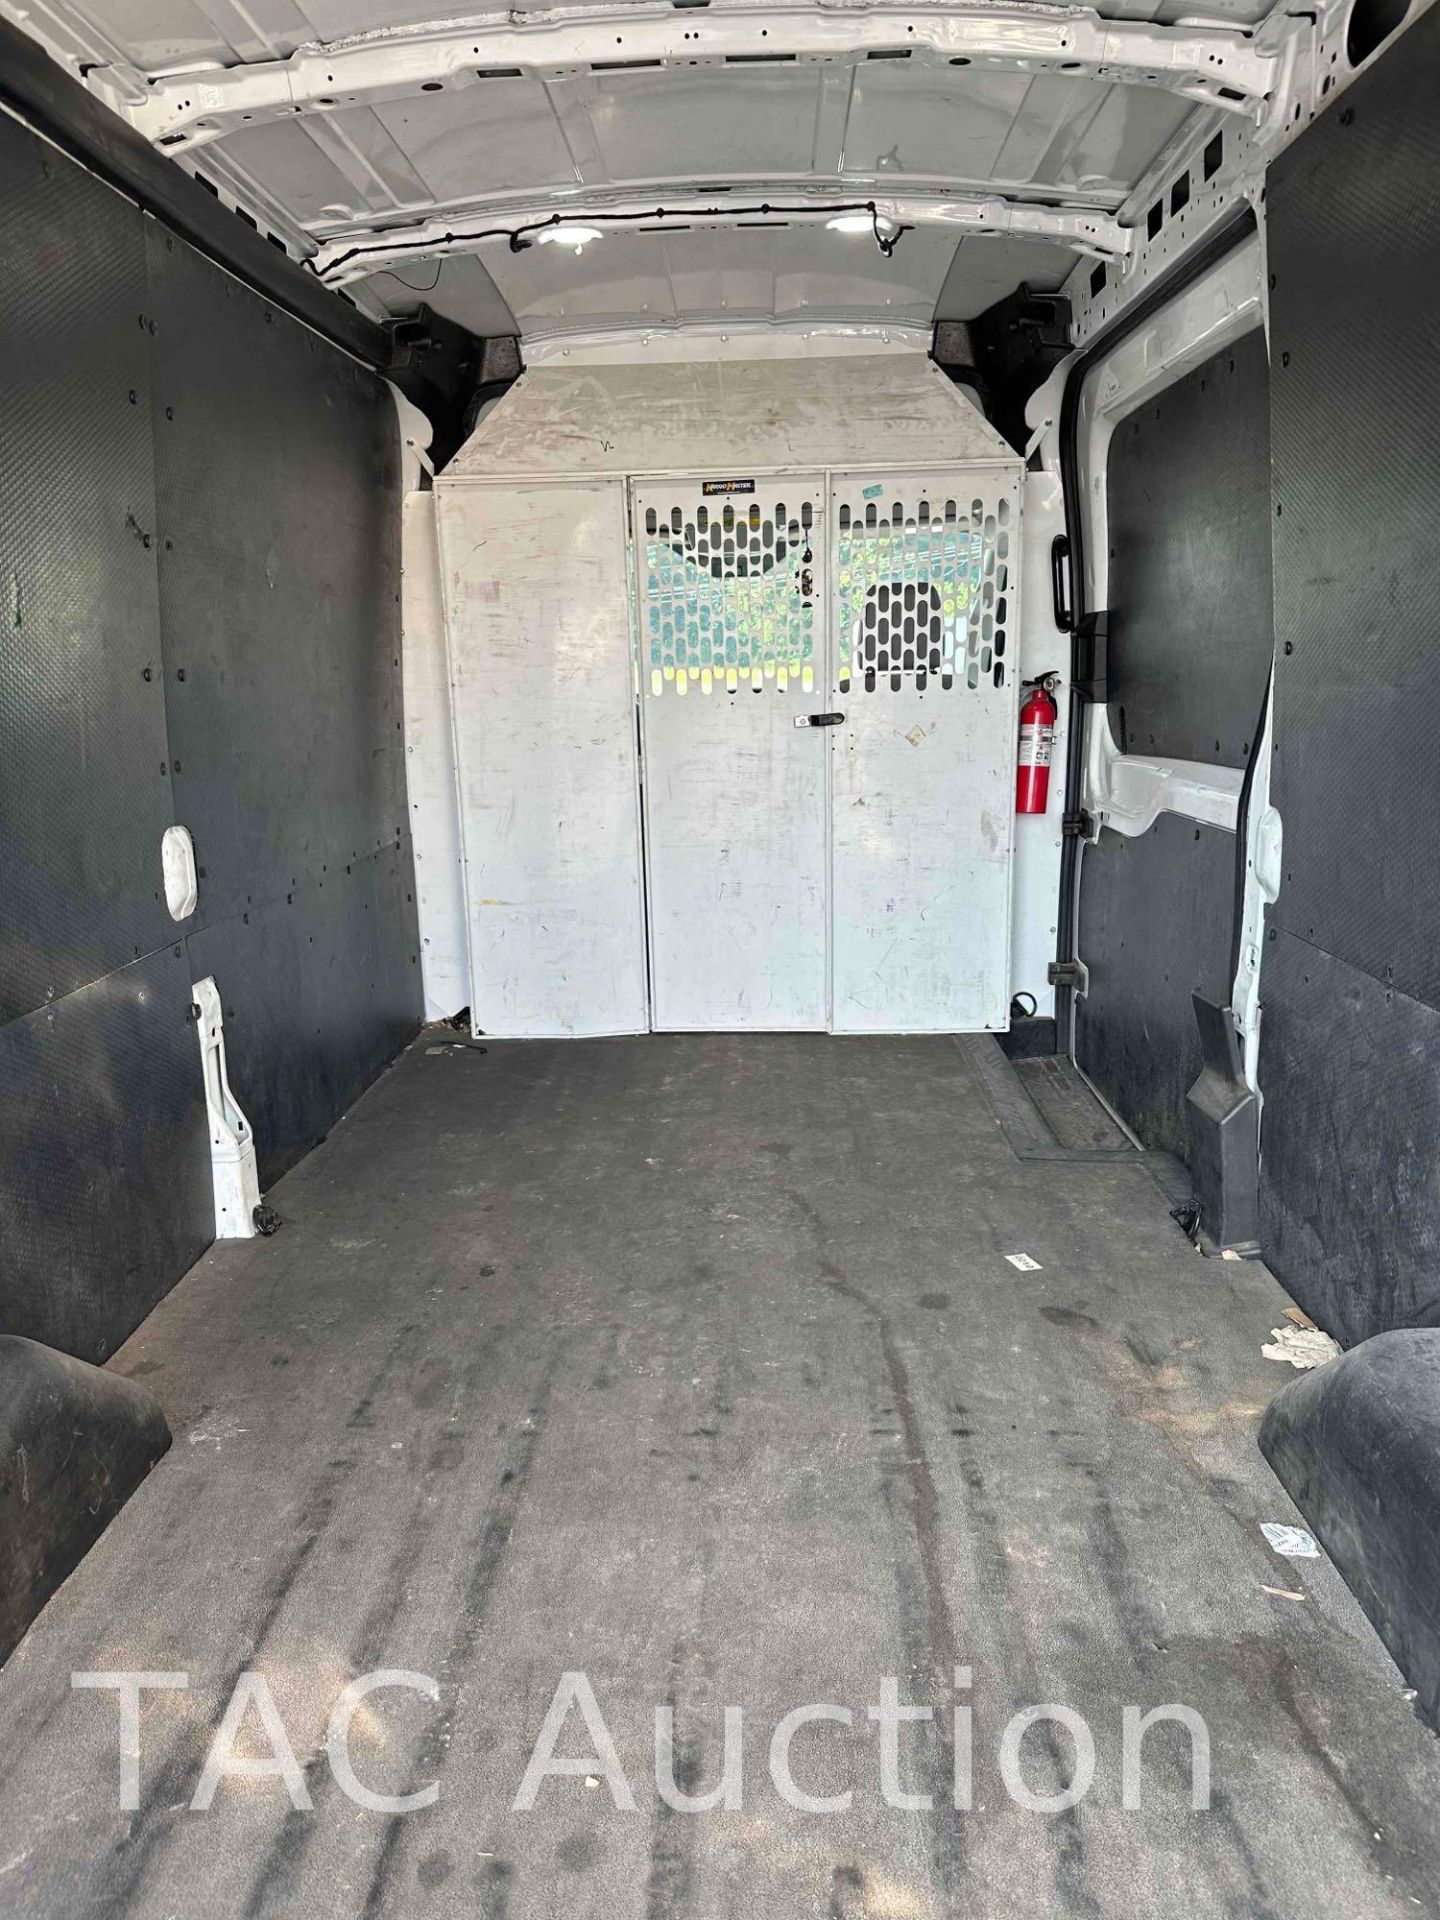 2019 Ford Transit 150 Cargo Van - Image 10 of 25